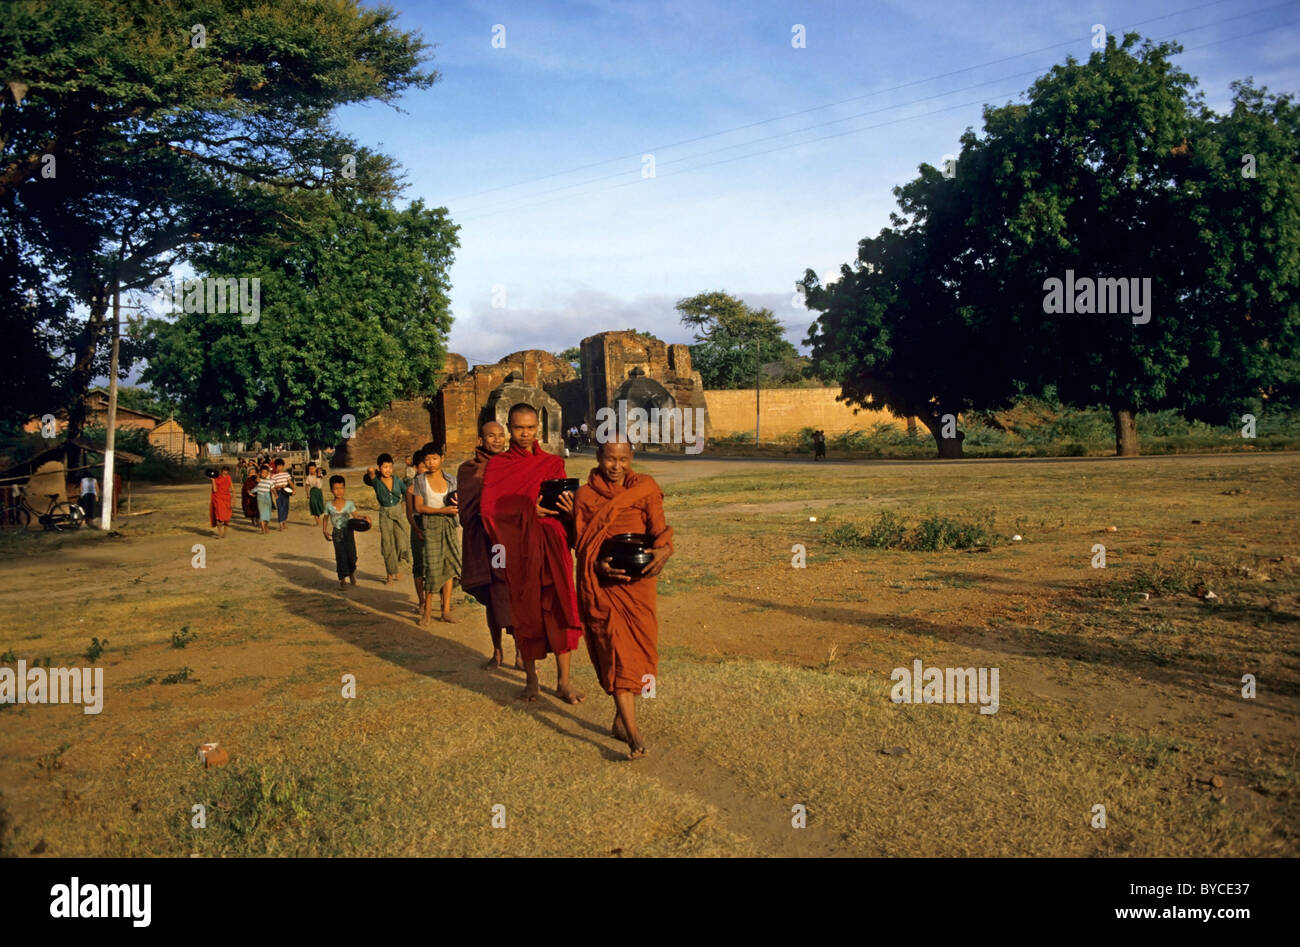 Los monjes budistas manteniendo sus frascos de comida en la mañana, Bagan, Birmania. Foto de stock